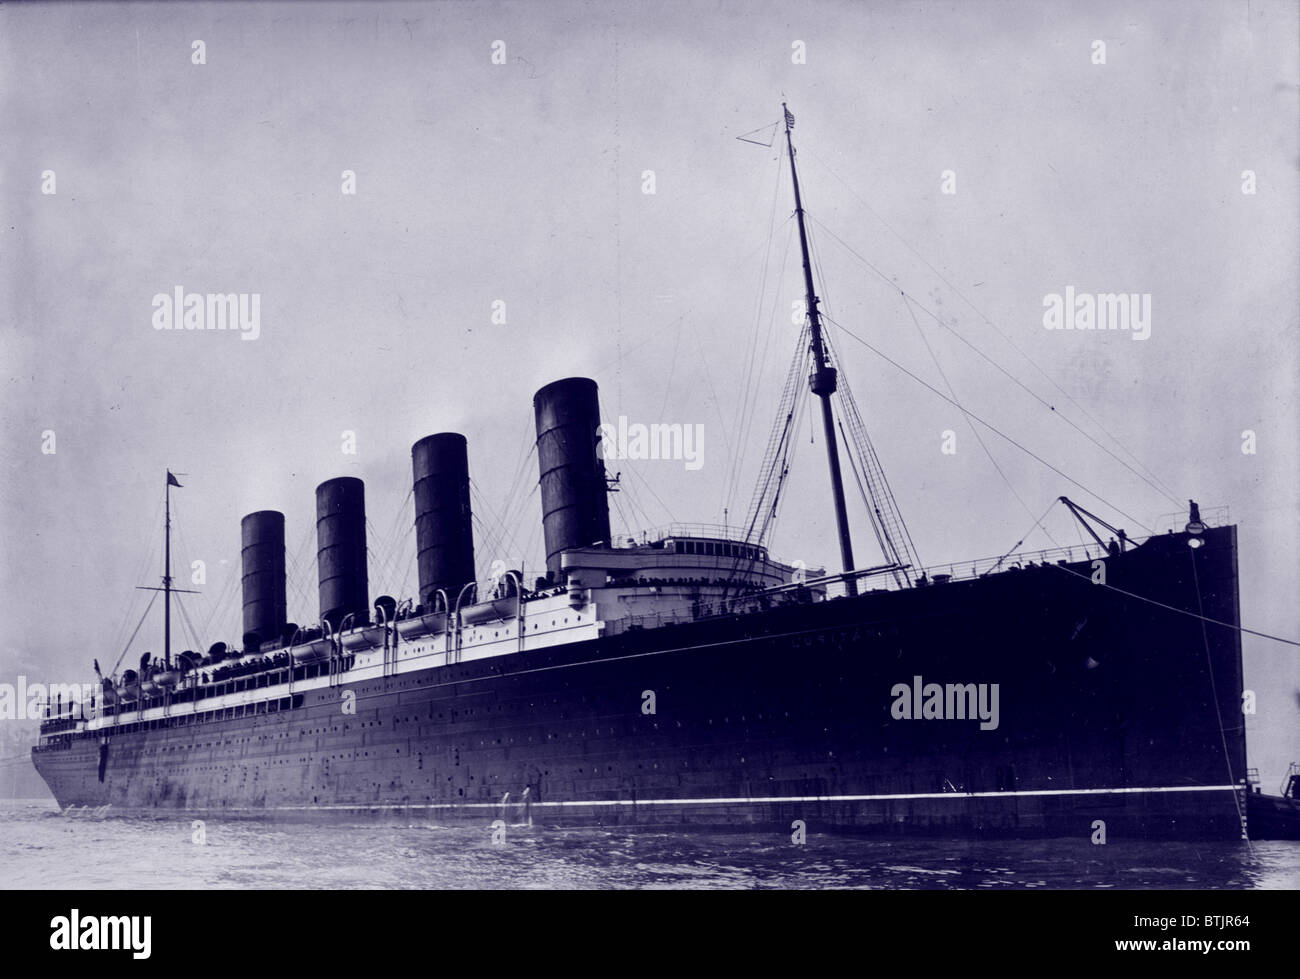 Le RMS Lusitania, navire britannique torpillé par un sous-marin allemand pendant la Première Guerre mondiale, vers 1907-1915. Banque D'Images